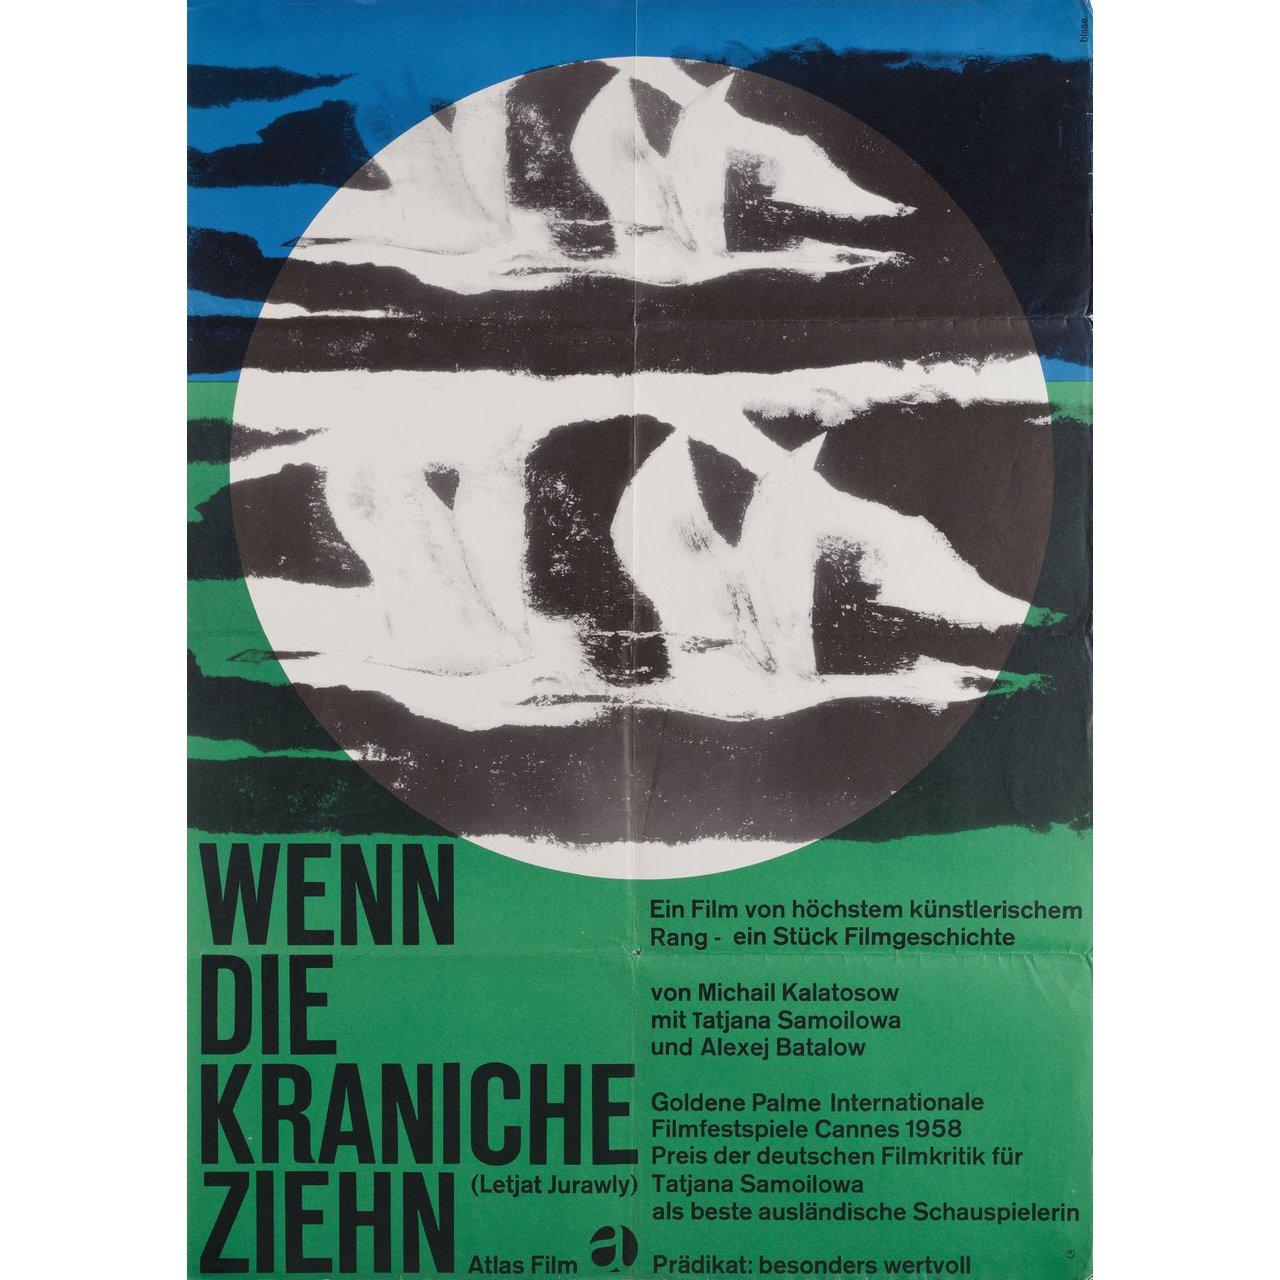 Original 1963 re-release German A1 poster by Karl Oskar Blase for the 1957 film The Cranes are Flying (Letyat zhuravli) directed by Mikhail Kalatozov with Tatyana Samoylova / Aleksey Batalov / Vasiliy Merkurev / Aleksandr Shvorin. Very Good